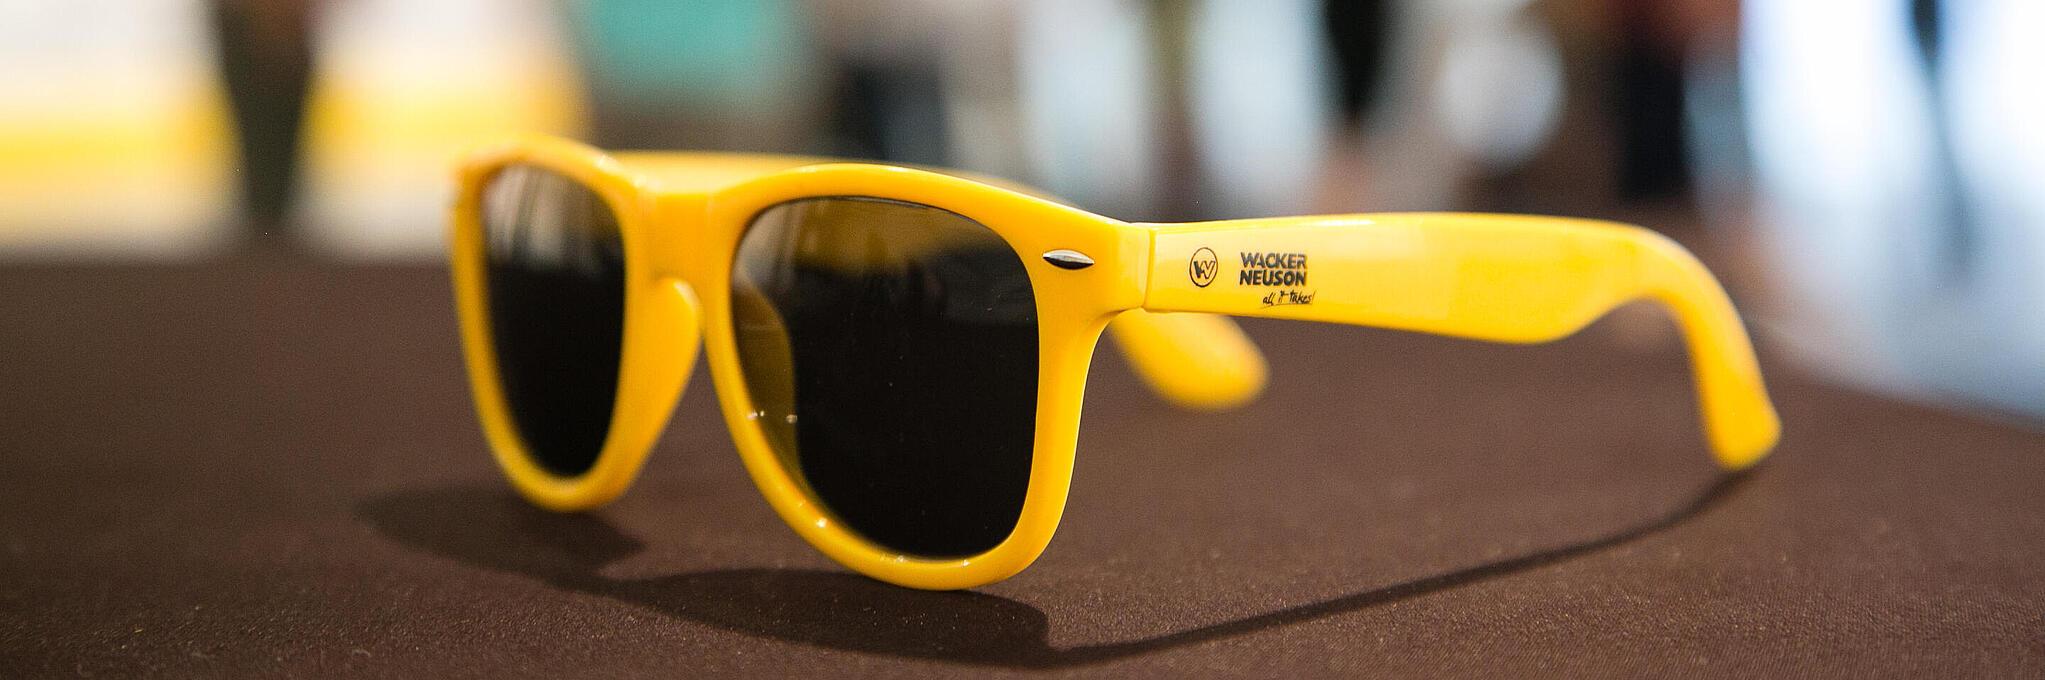 Wacker Neuson logolu sarı güneş gözlüğü.